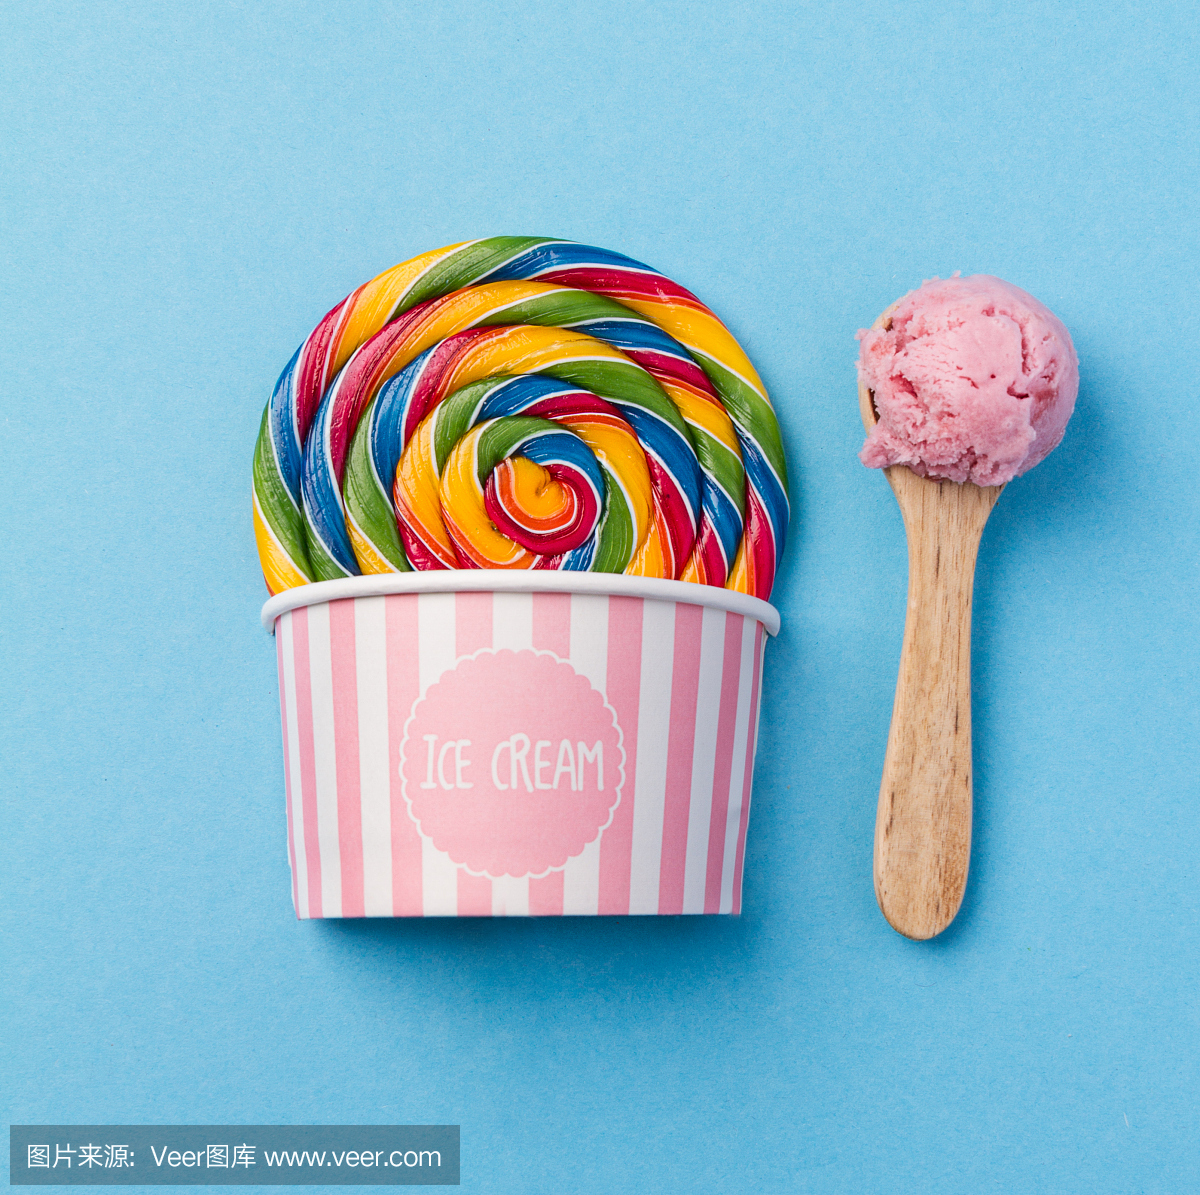 美味开胃假的棒棒糖冰淇淋在粉红色的纸杯在蓝